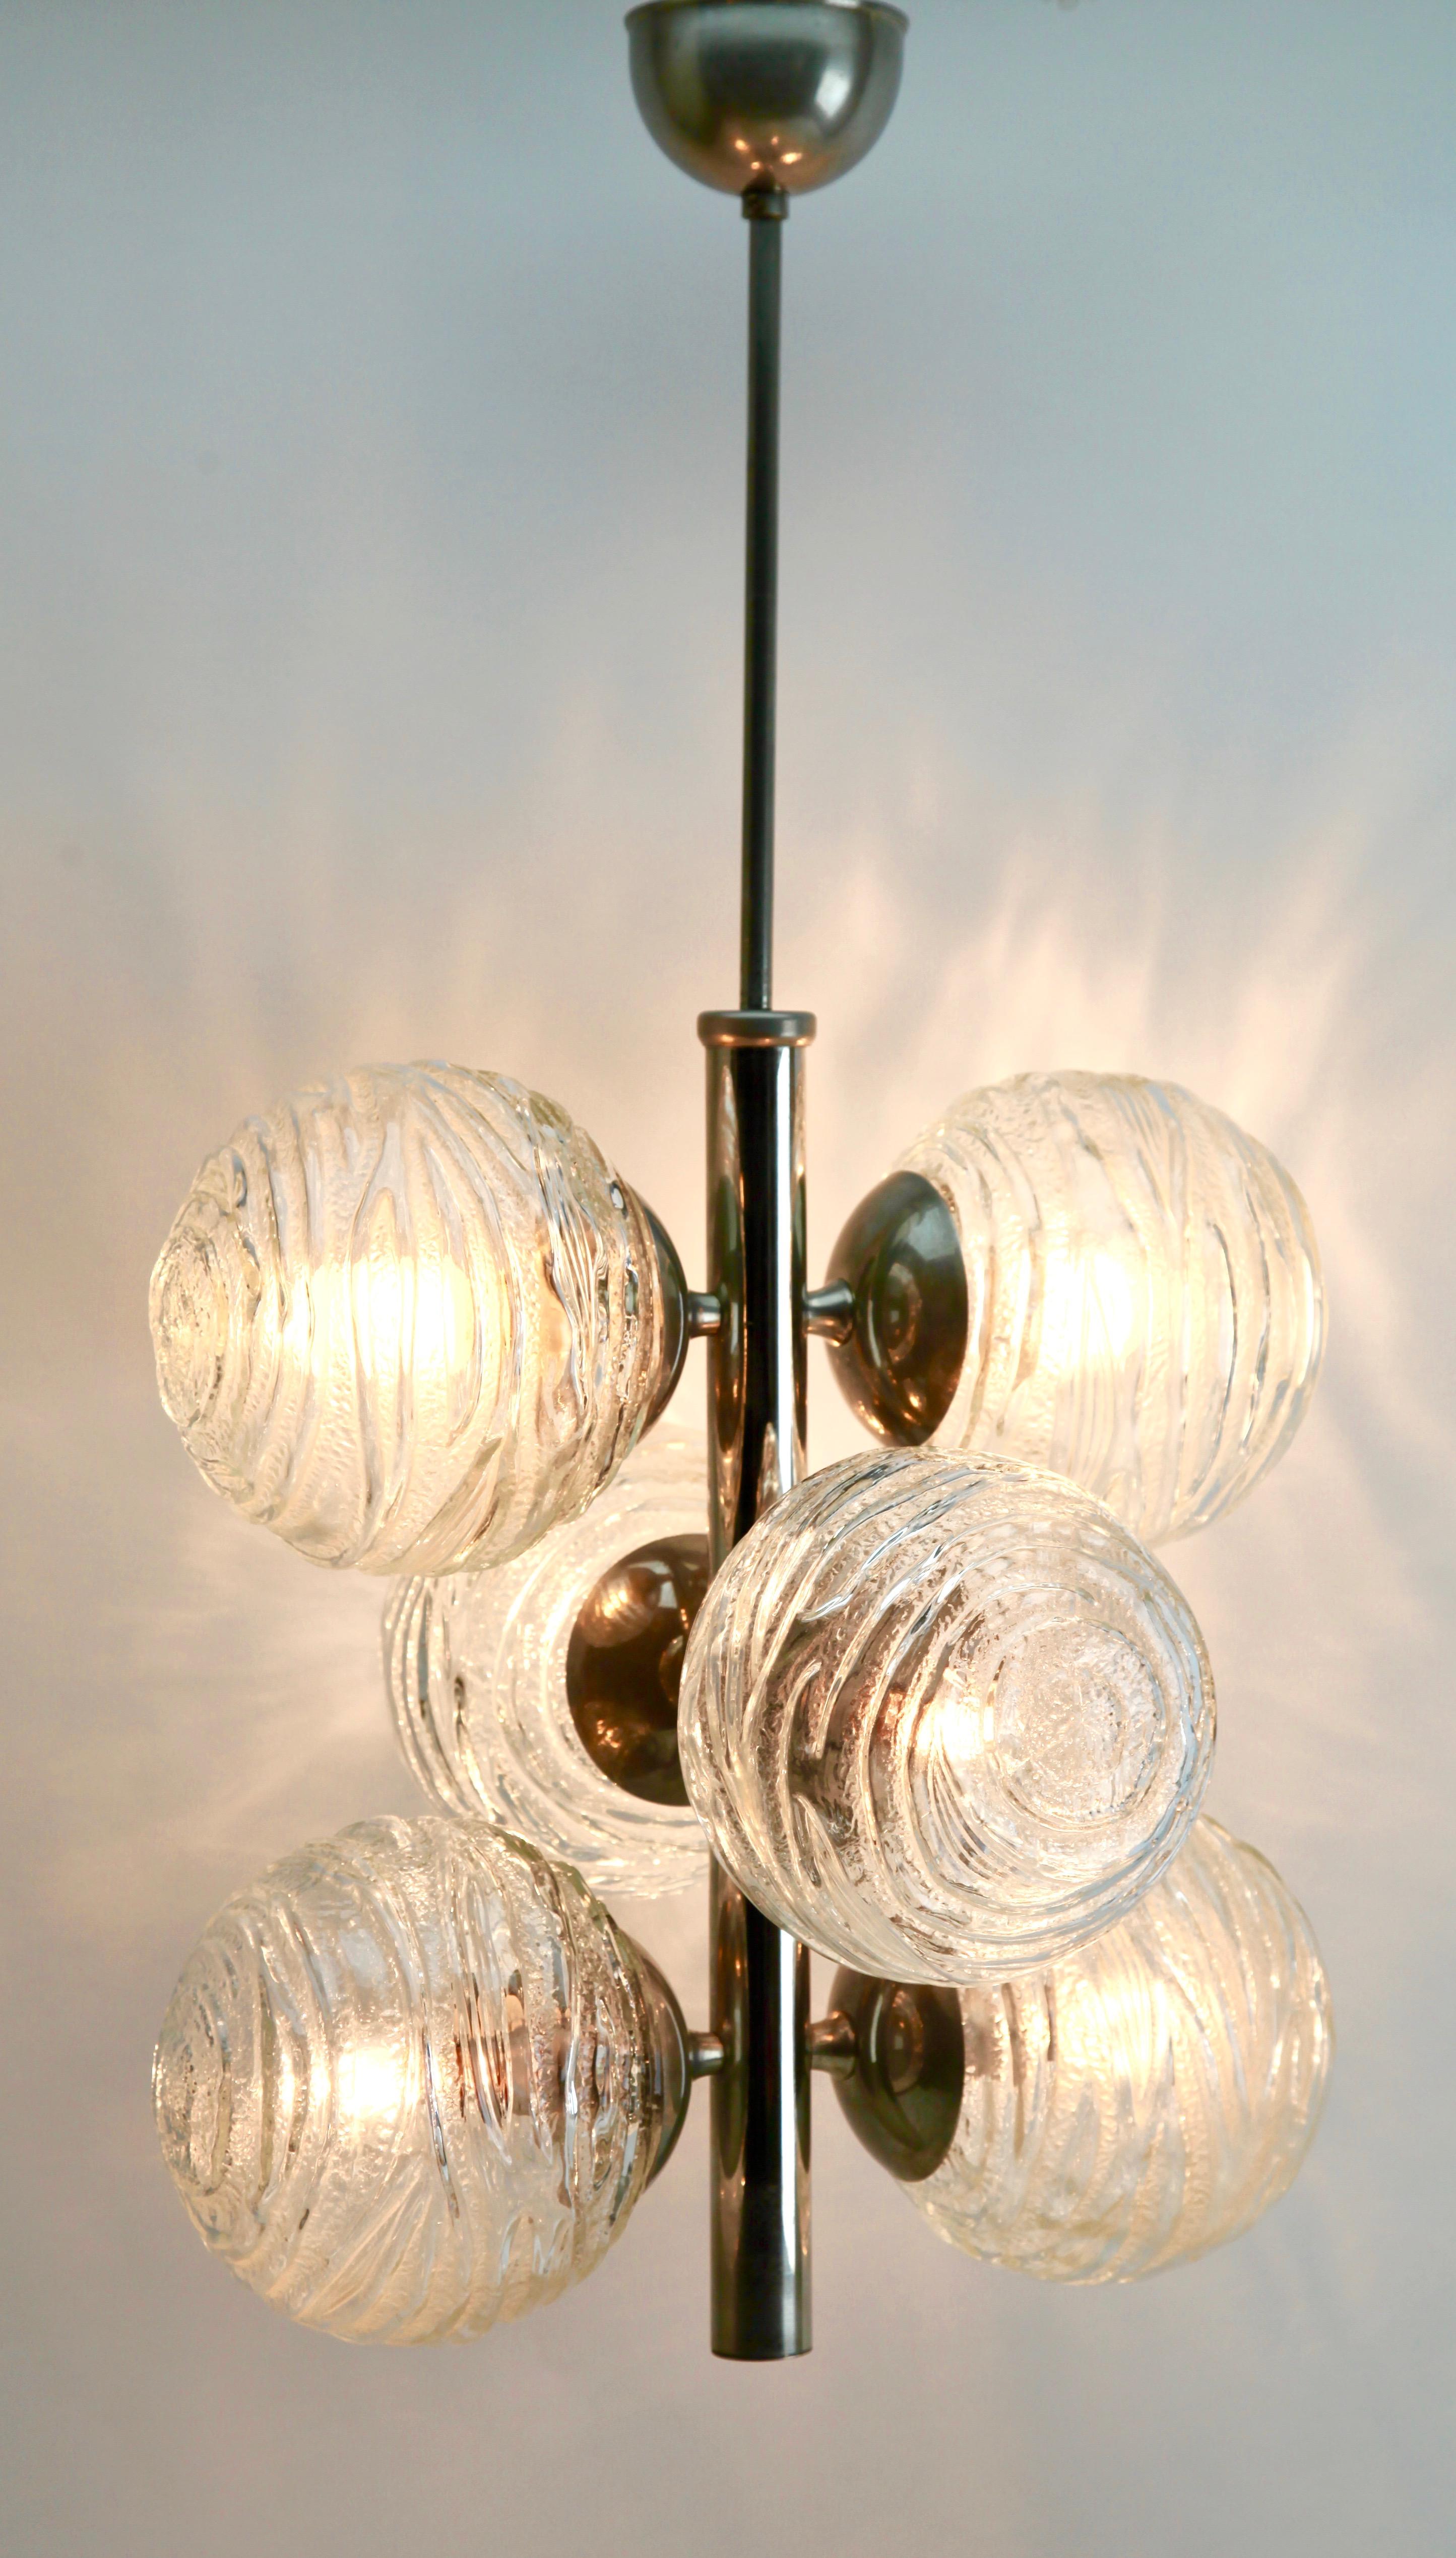 Diese Leuchte aus der Serie der Firma Doria Leuchten besteht aus sechs Lampen, die als drei Paare auf einem zentralen verchromten Stiel angeordnet sind. Jede Leuchte hat eine Halterung auf einer verchromten Platte und trägt einen runden,